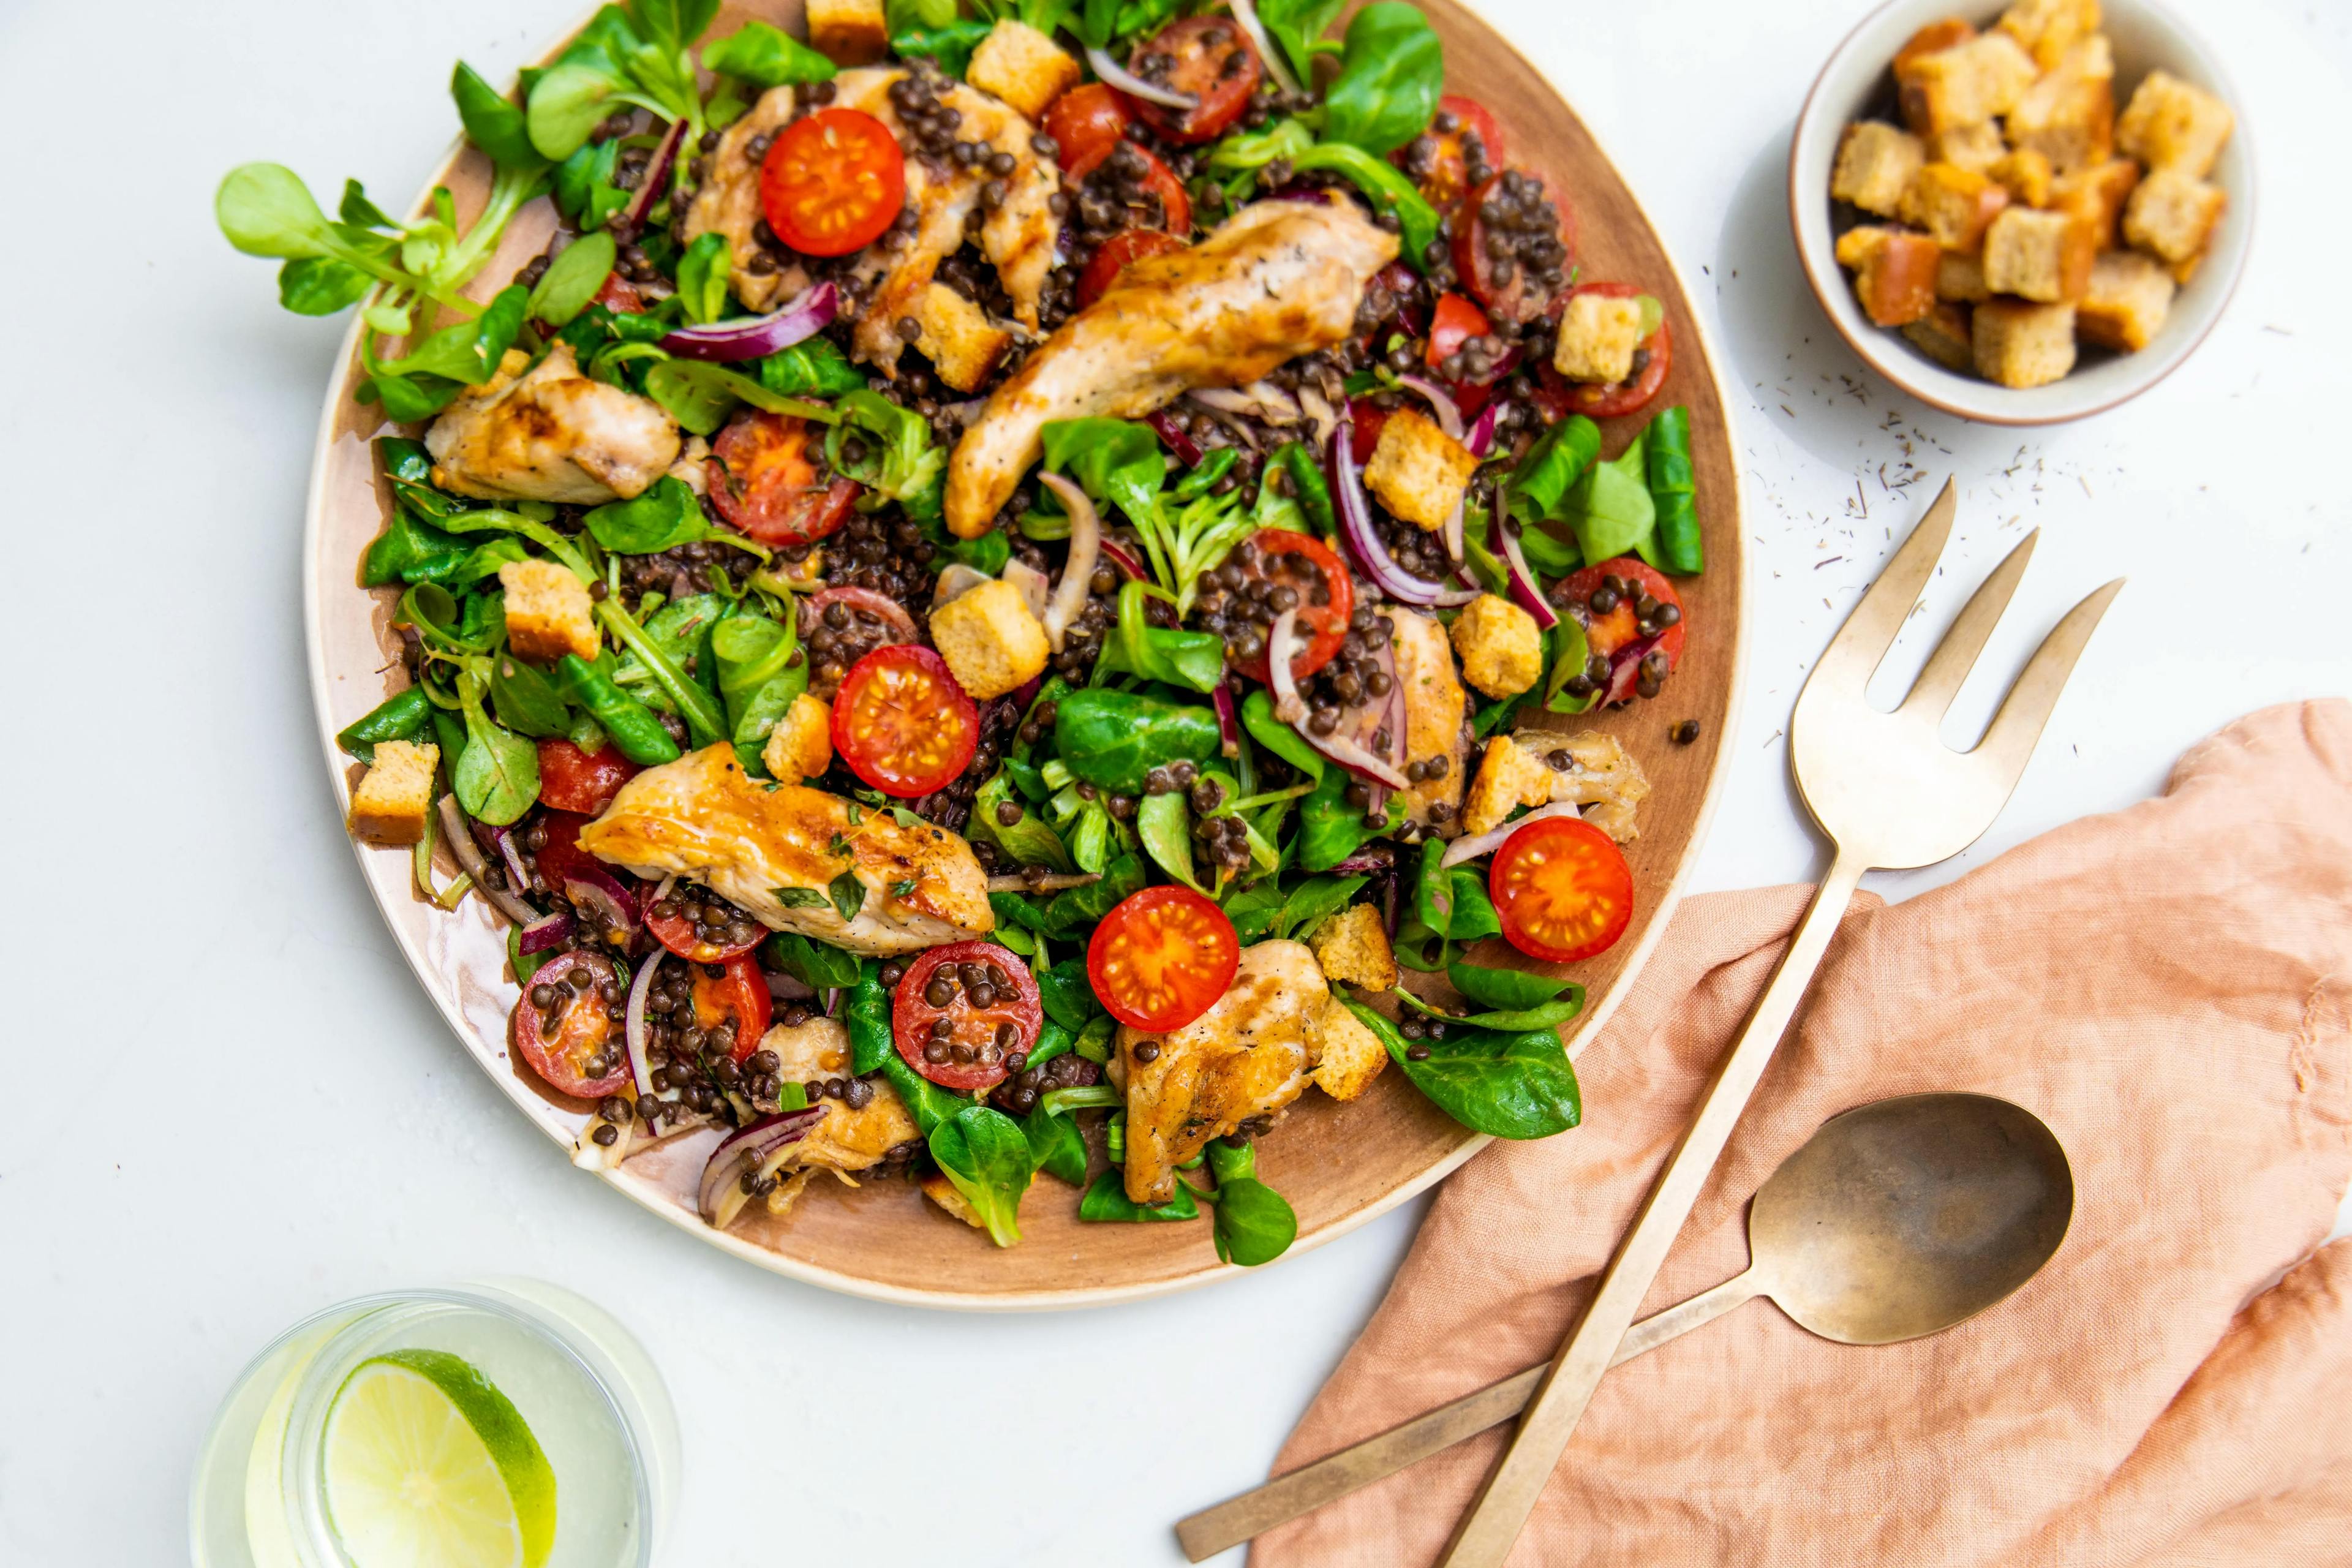 Nem salat – sådan laver du friske og lækre salater hver dag